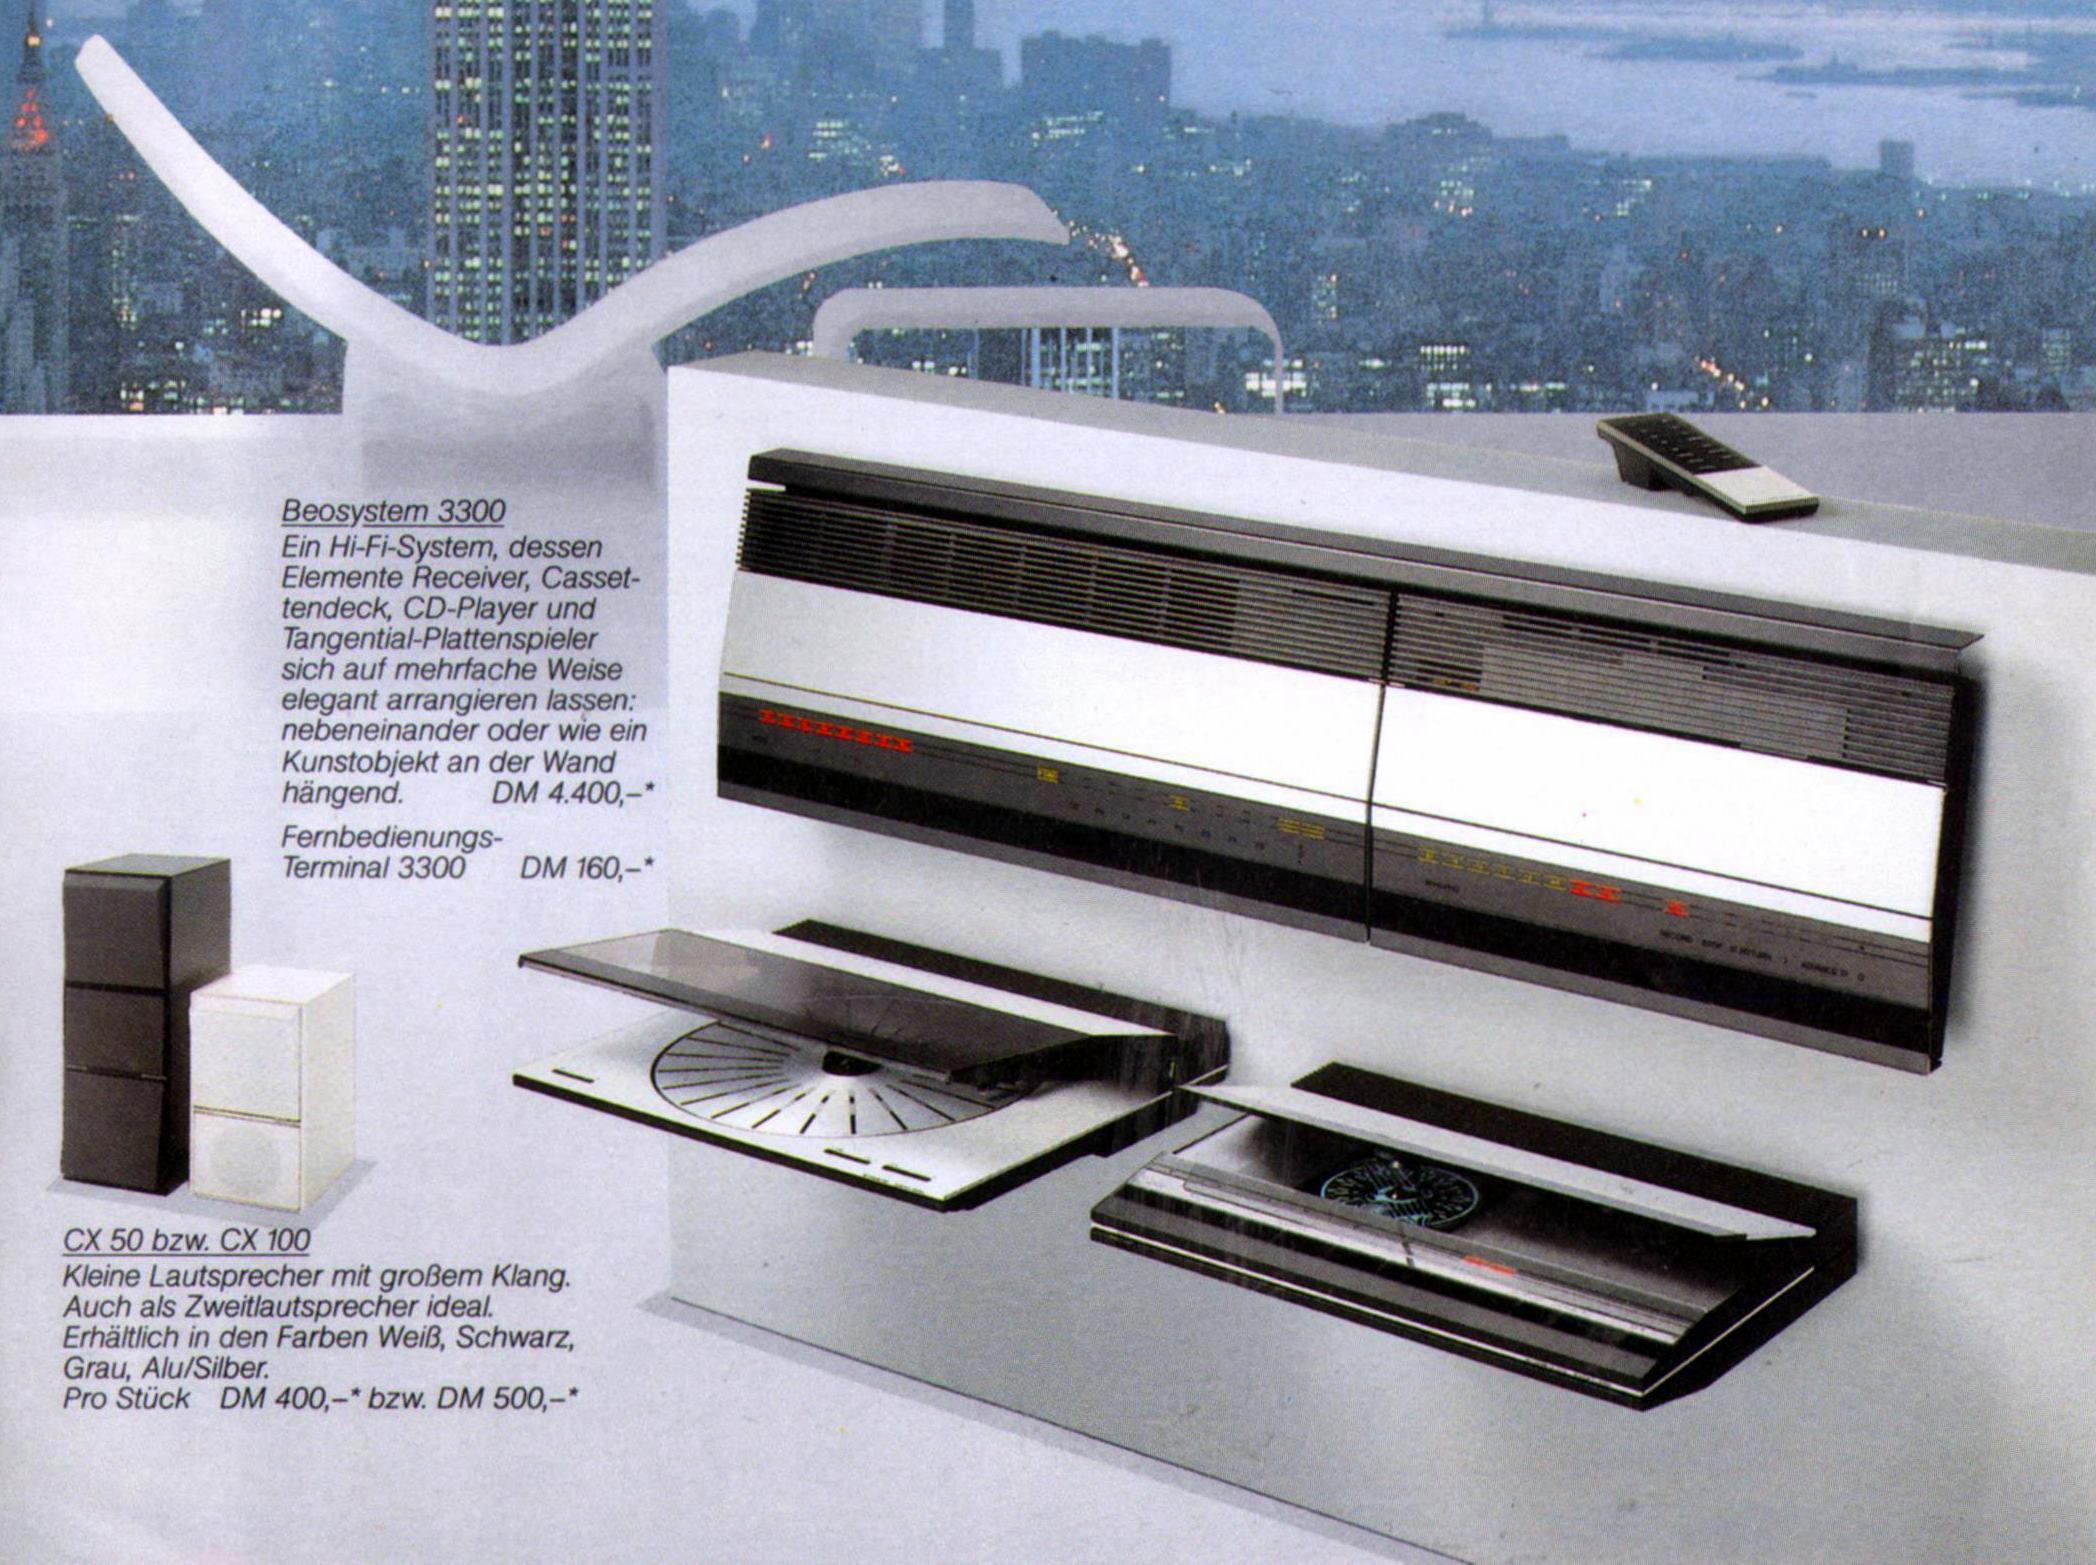 Bang & Olufsen Beosystem 3300-Prospekt-1988.jpg